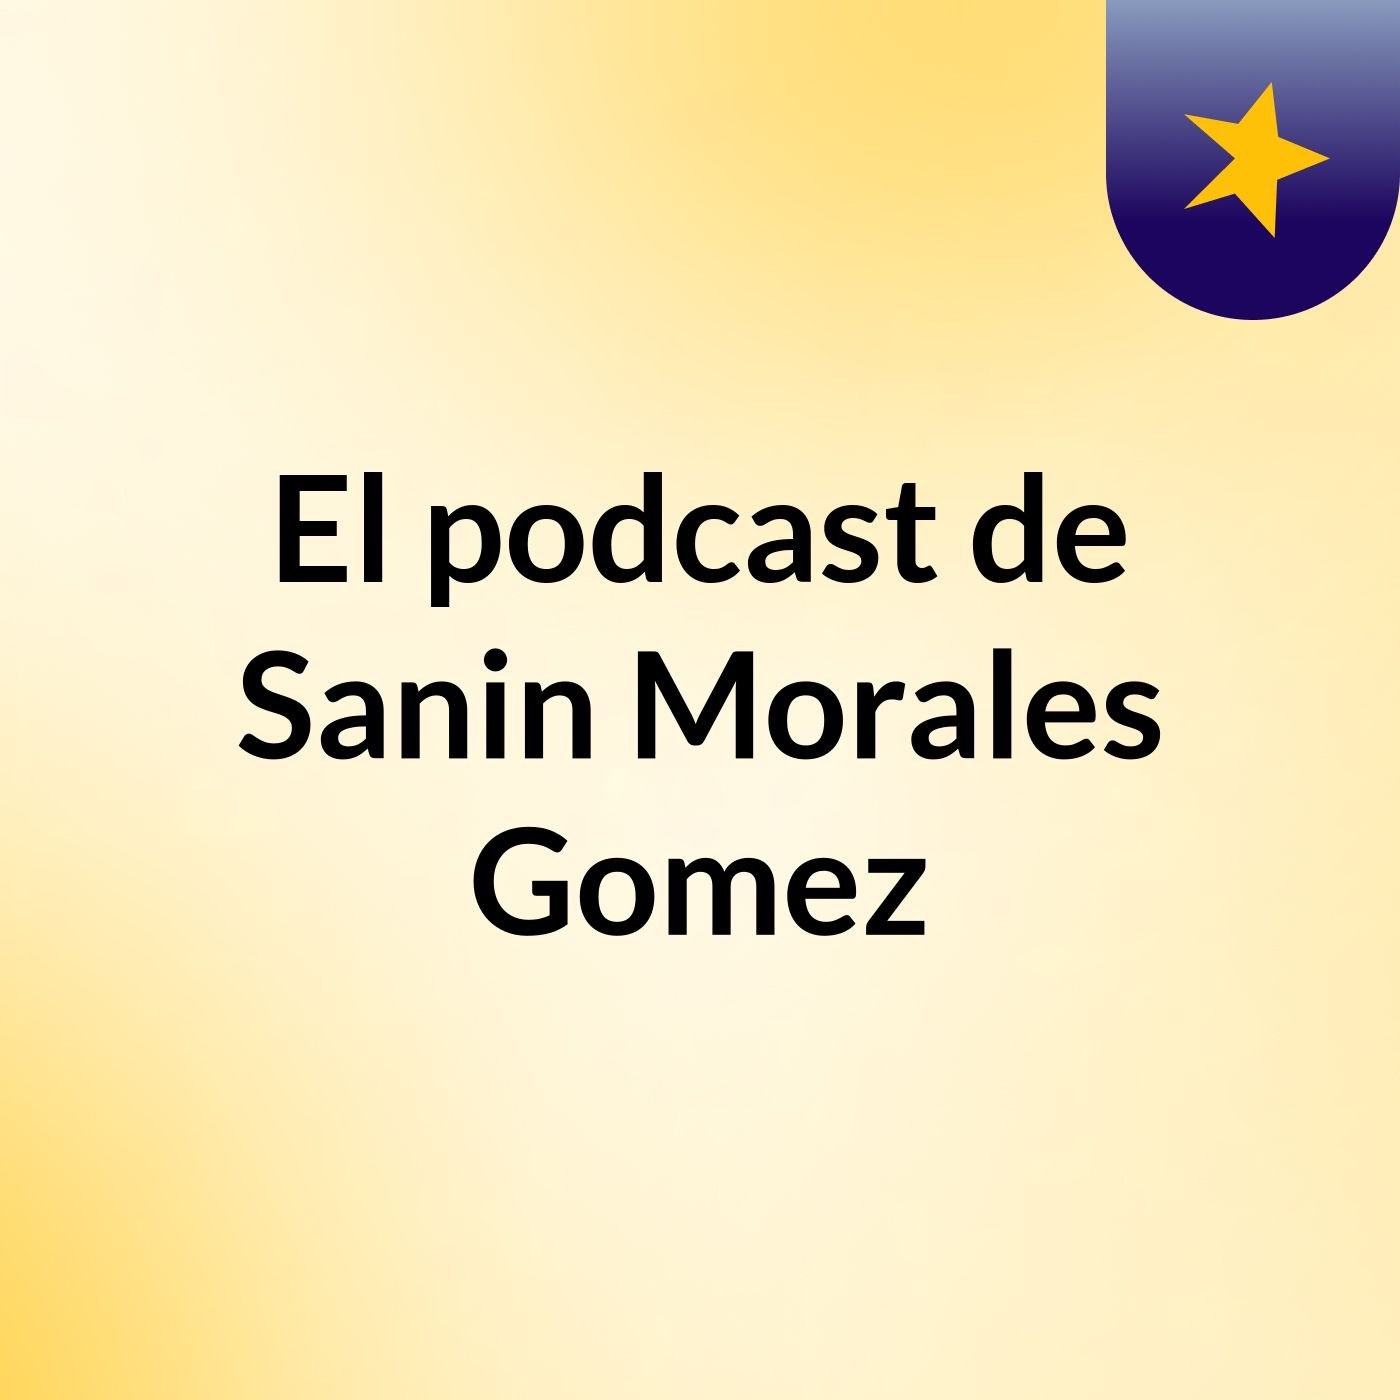 El podcast de Sanin Morales Gomez